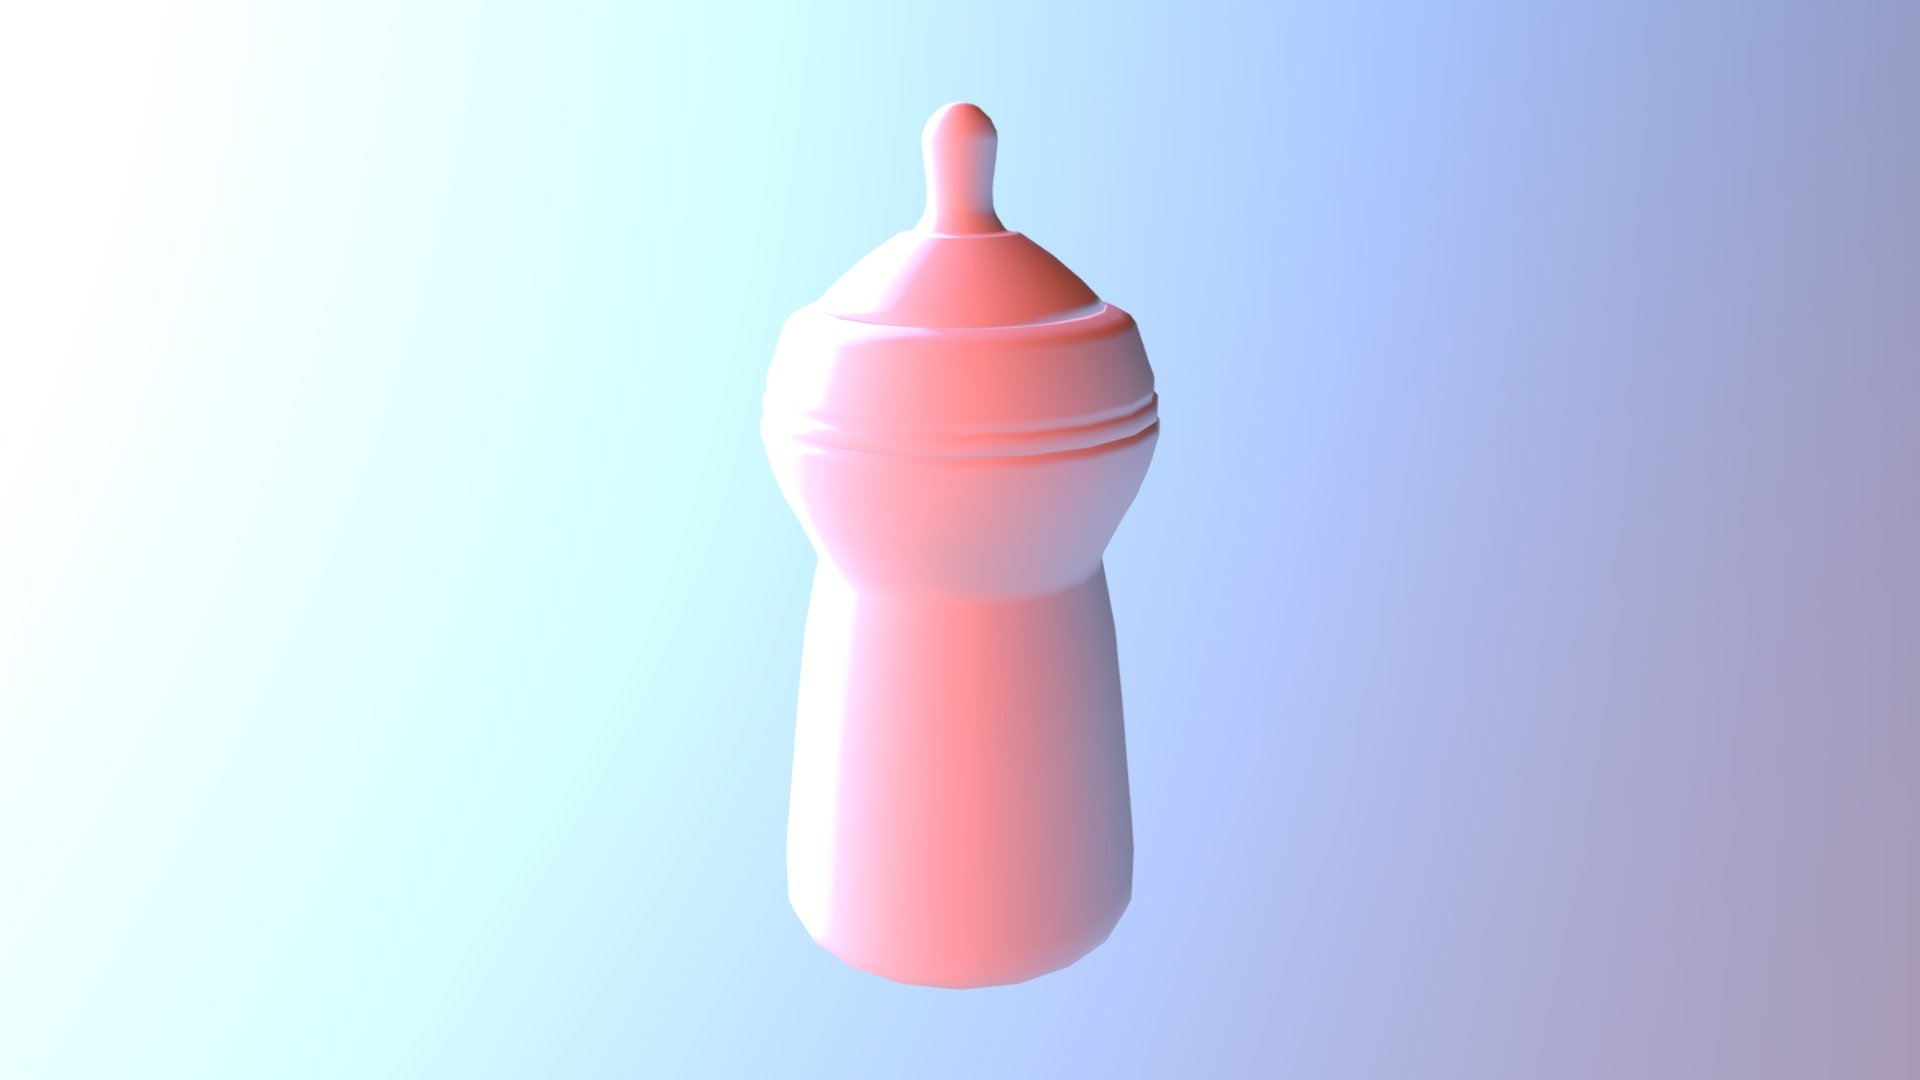 My first 3D model&ndash; DGM 1660 Exercise - Baby Bottle - Download Free 3D model by Gavin Leavitt (@subrosian) 3d model